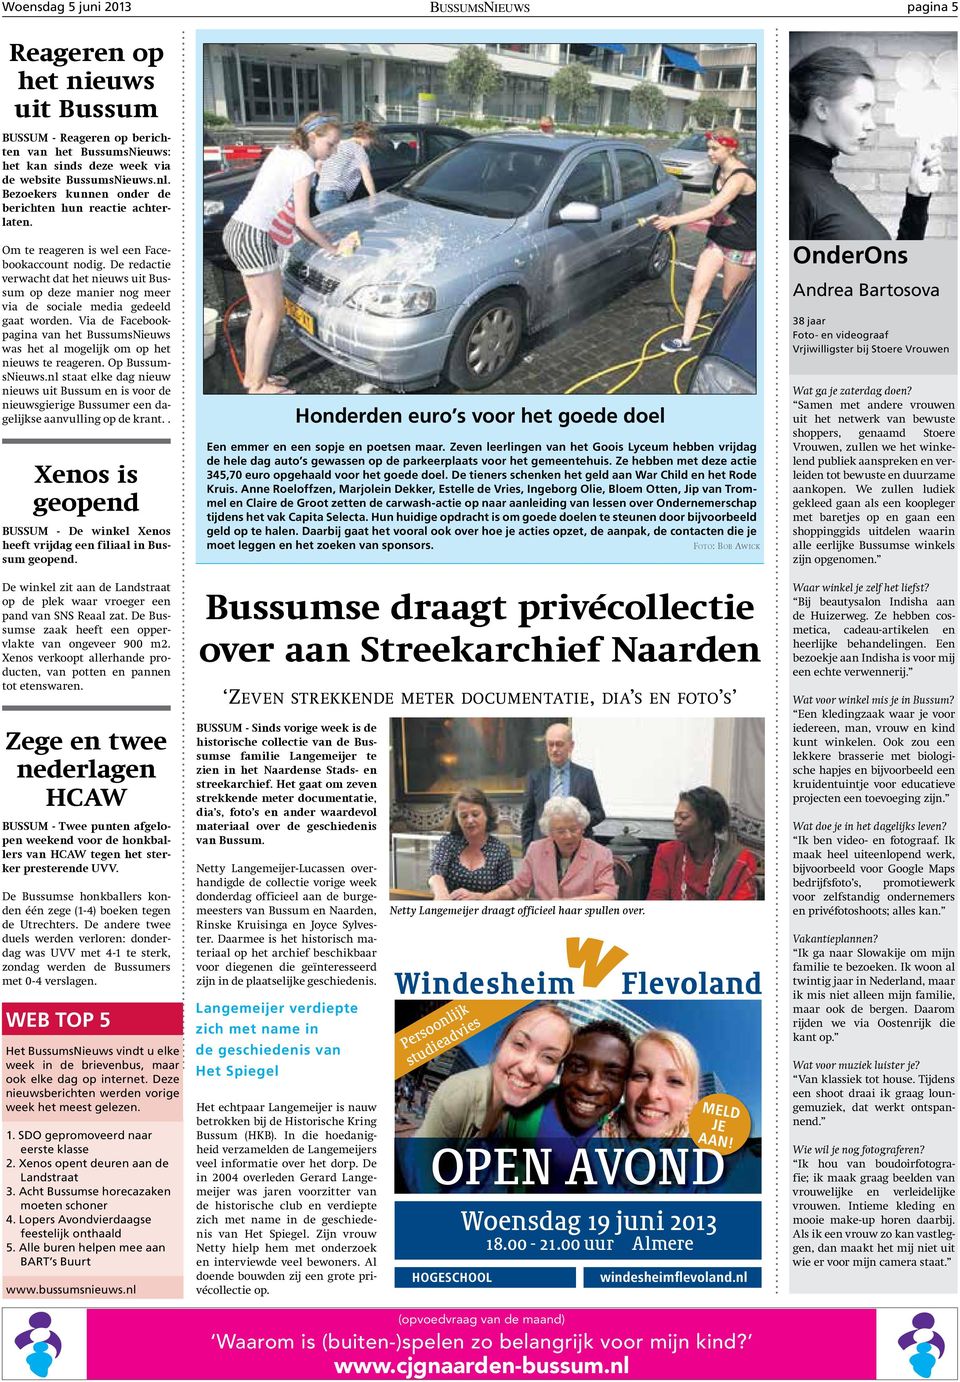 De redactie verwacht dat het nieuws uit Bussum op deze manier nog meer via de sociale media gedeeld gaat worden.